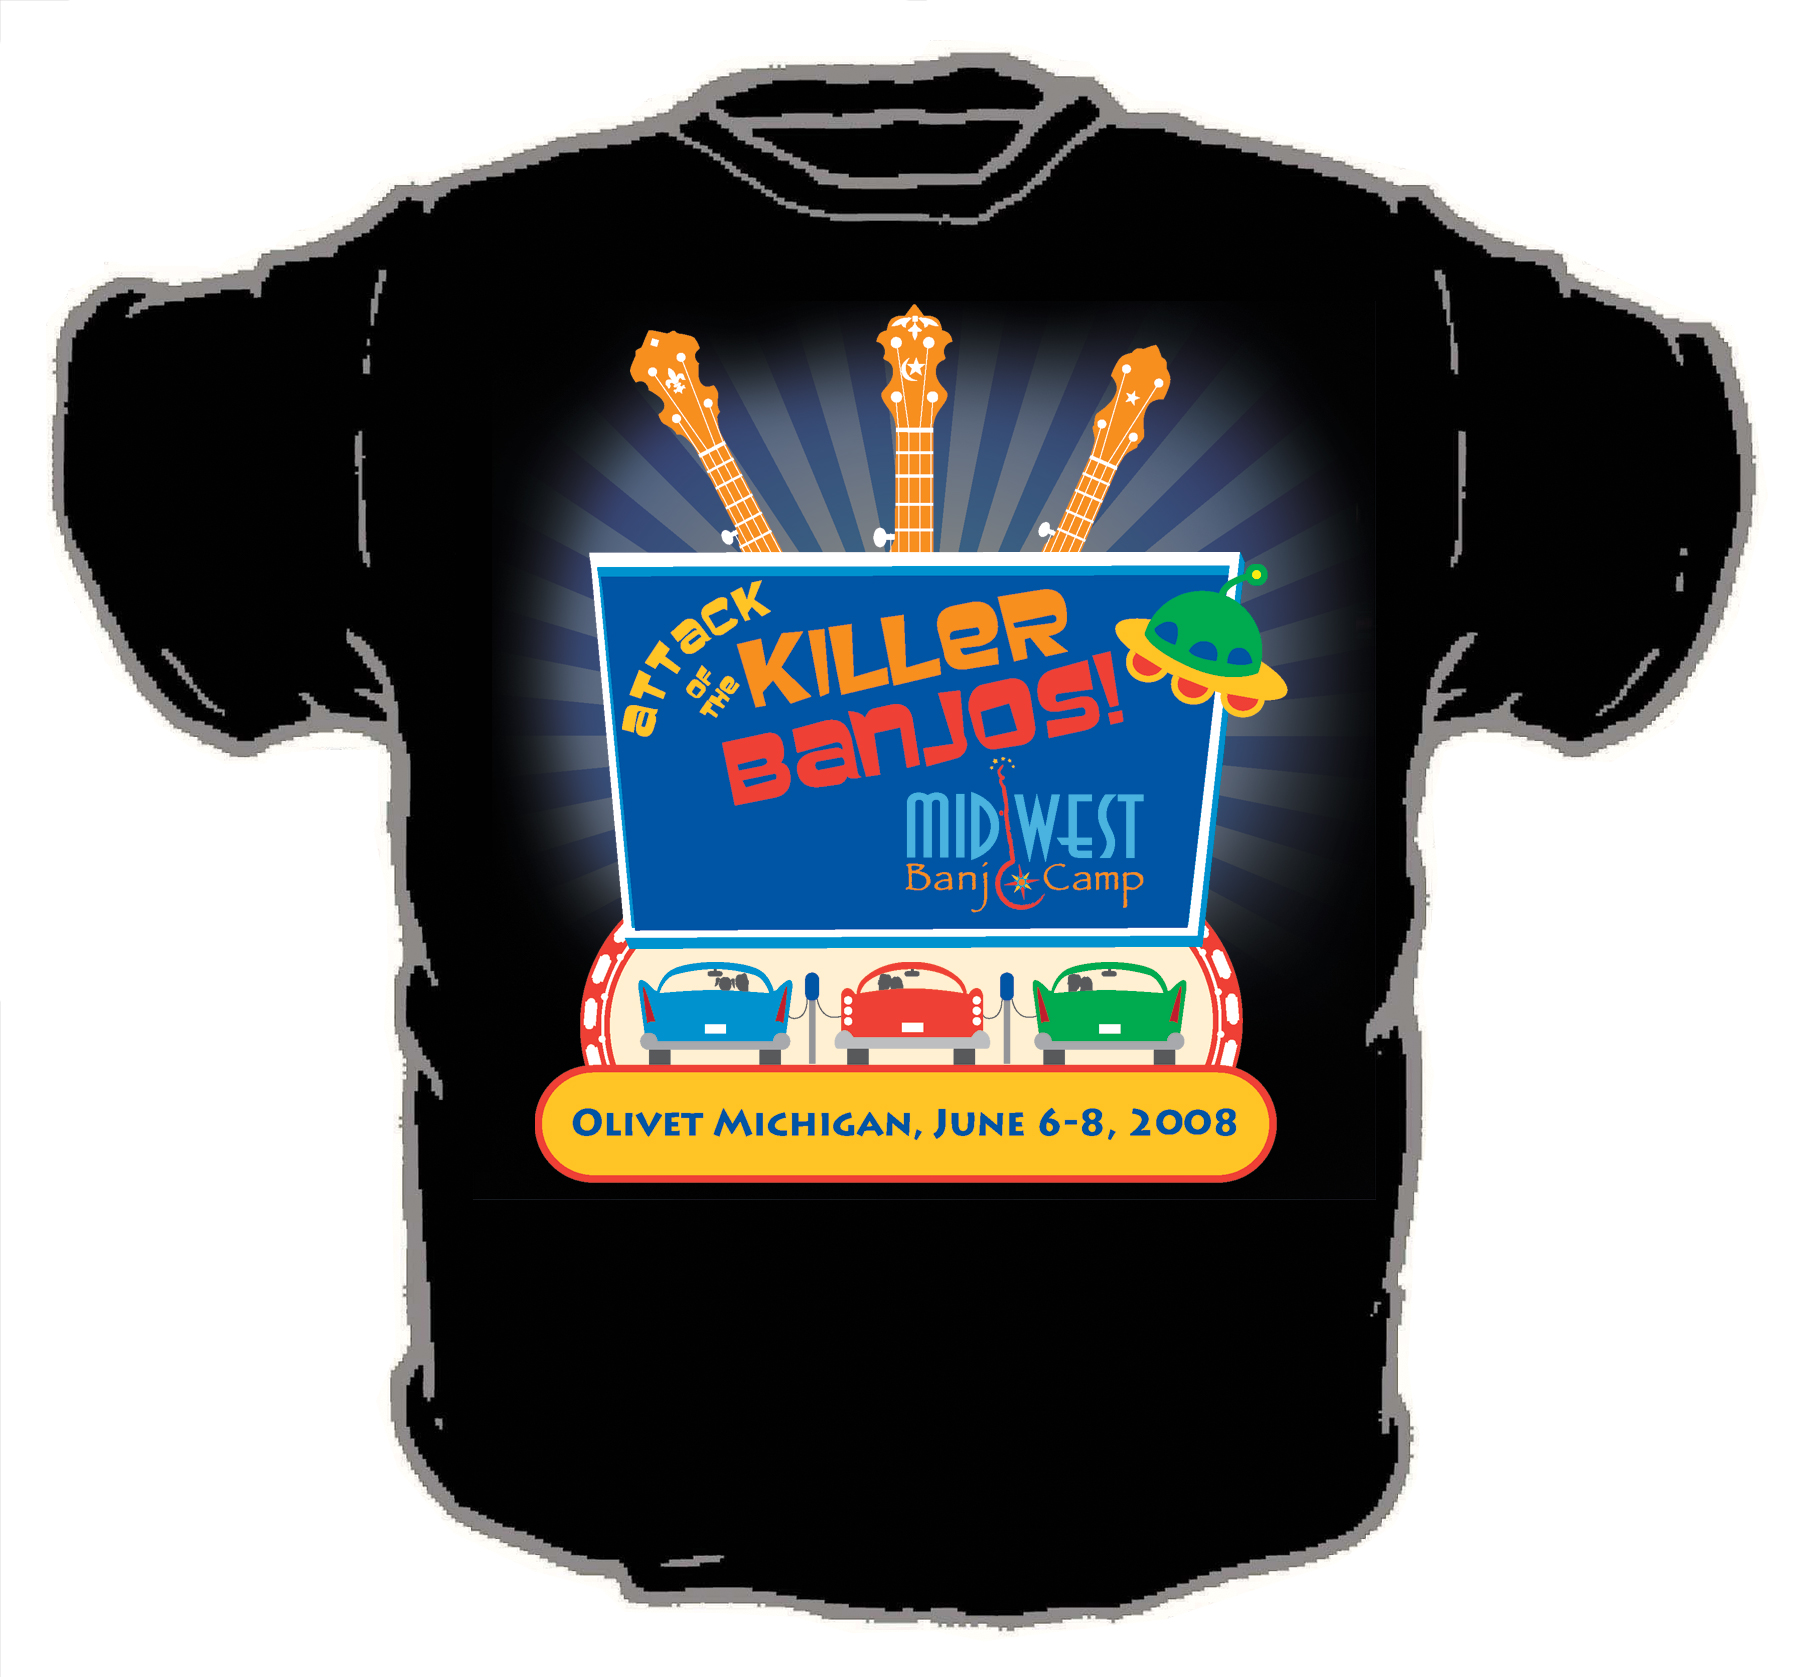 2008 T-Shirt Design